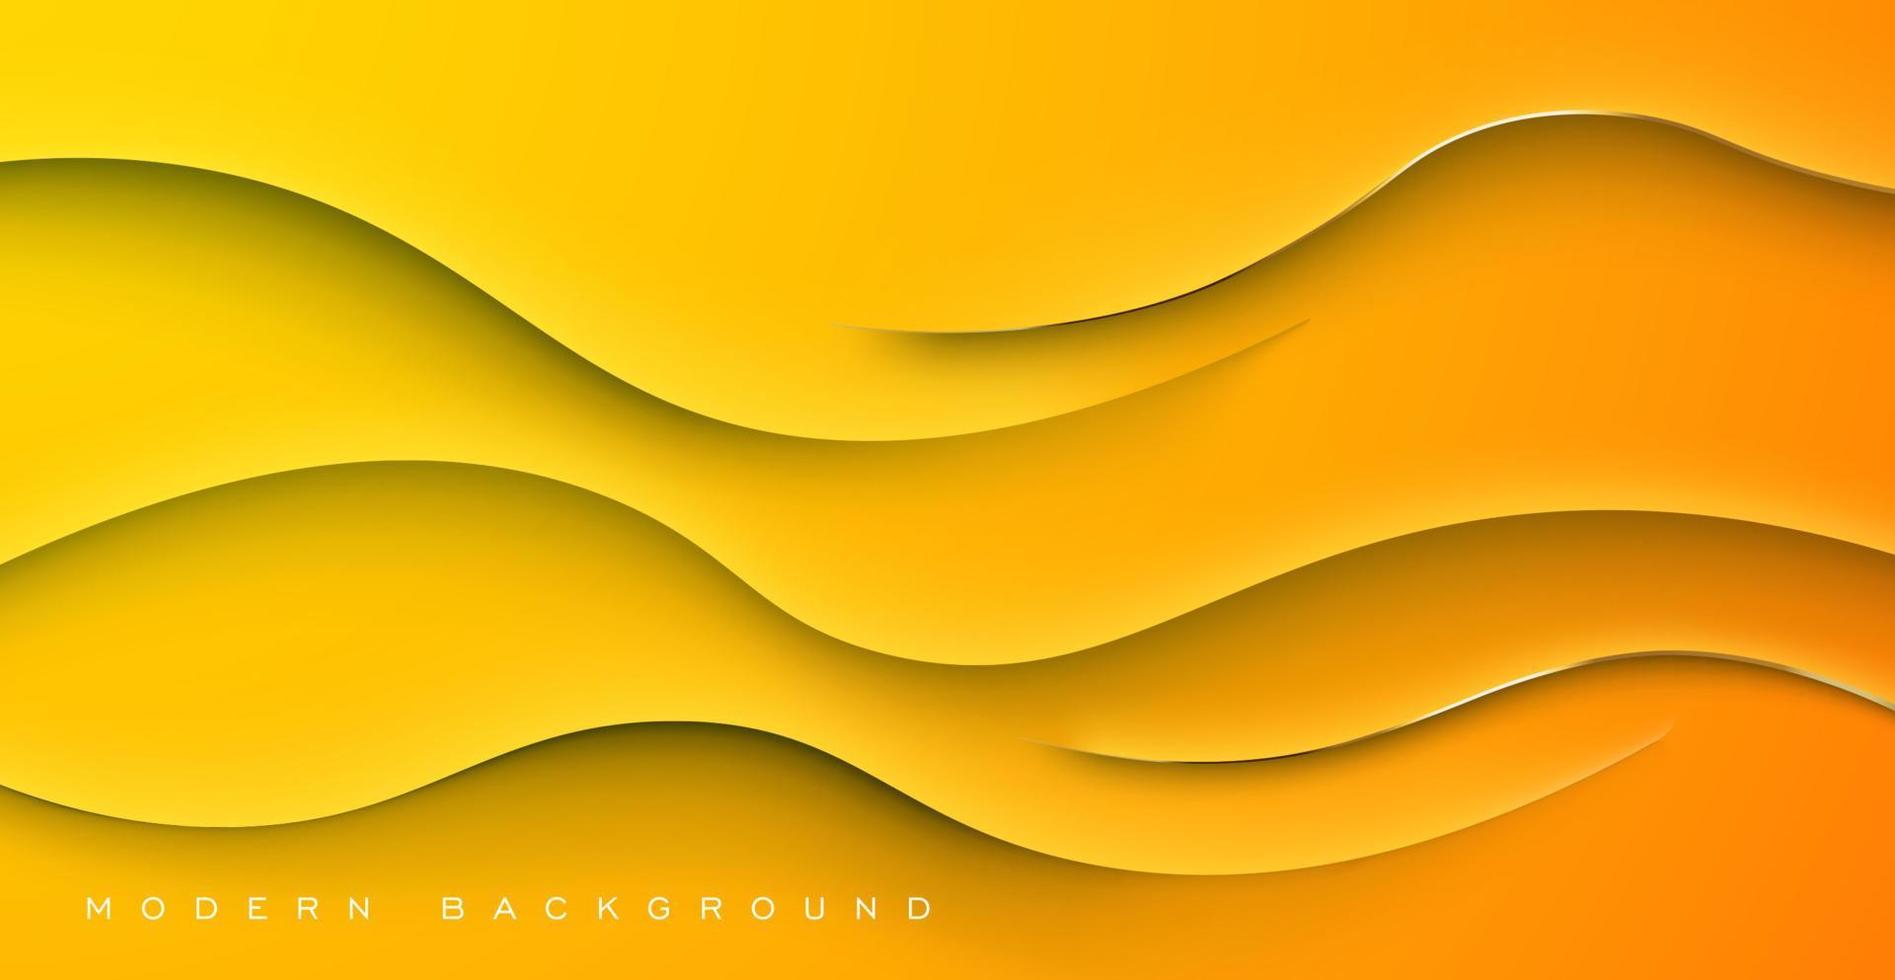 astratto giallo arancia pendenza dinamico ondulato ombra e leggero moderno design geometrico futuristico vettore sfondo illustrazione.